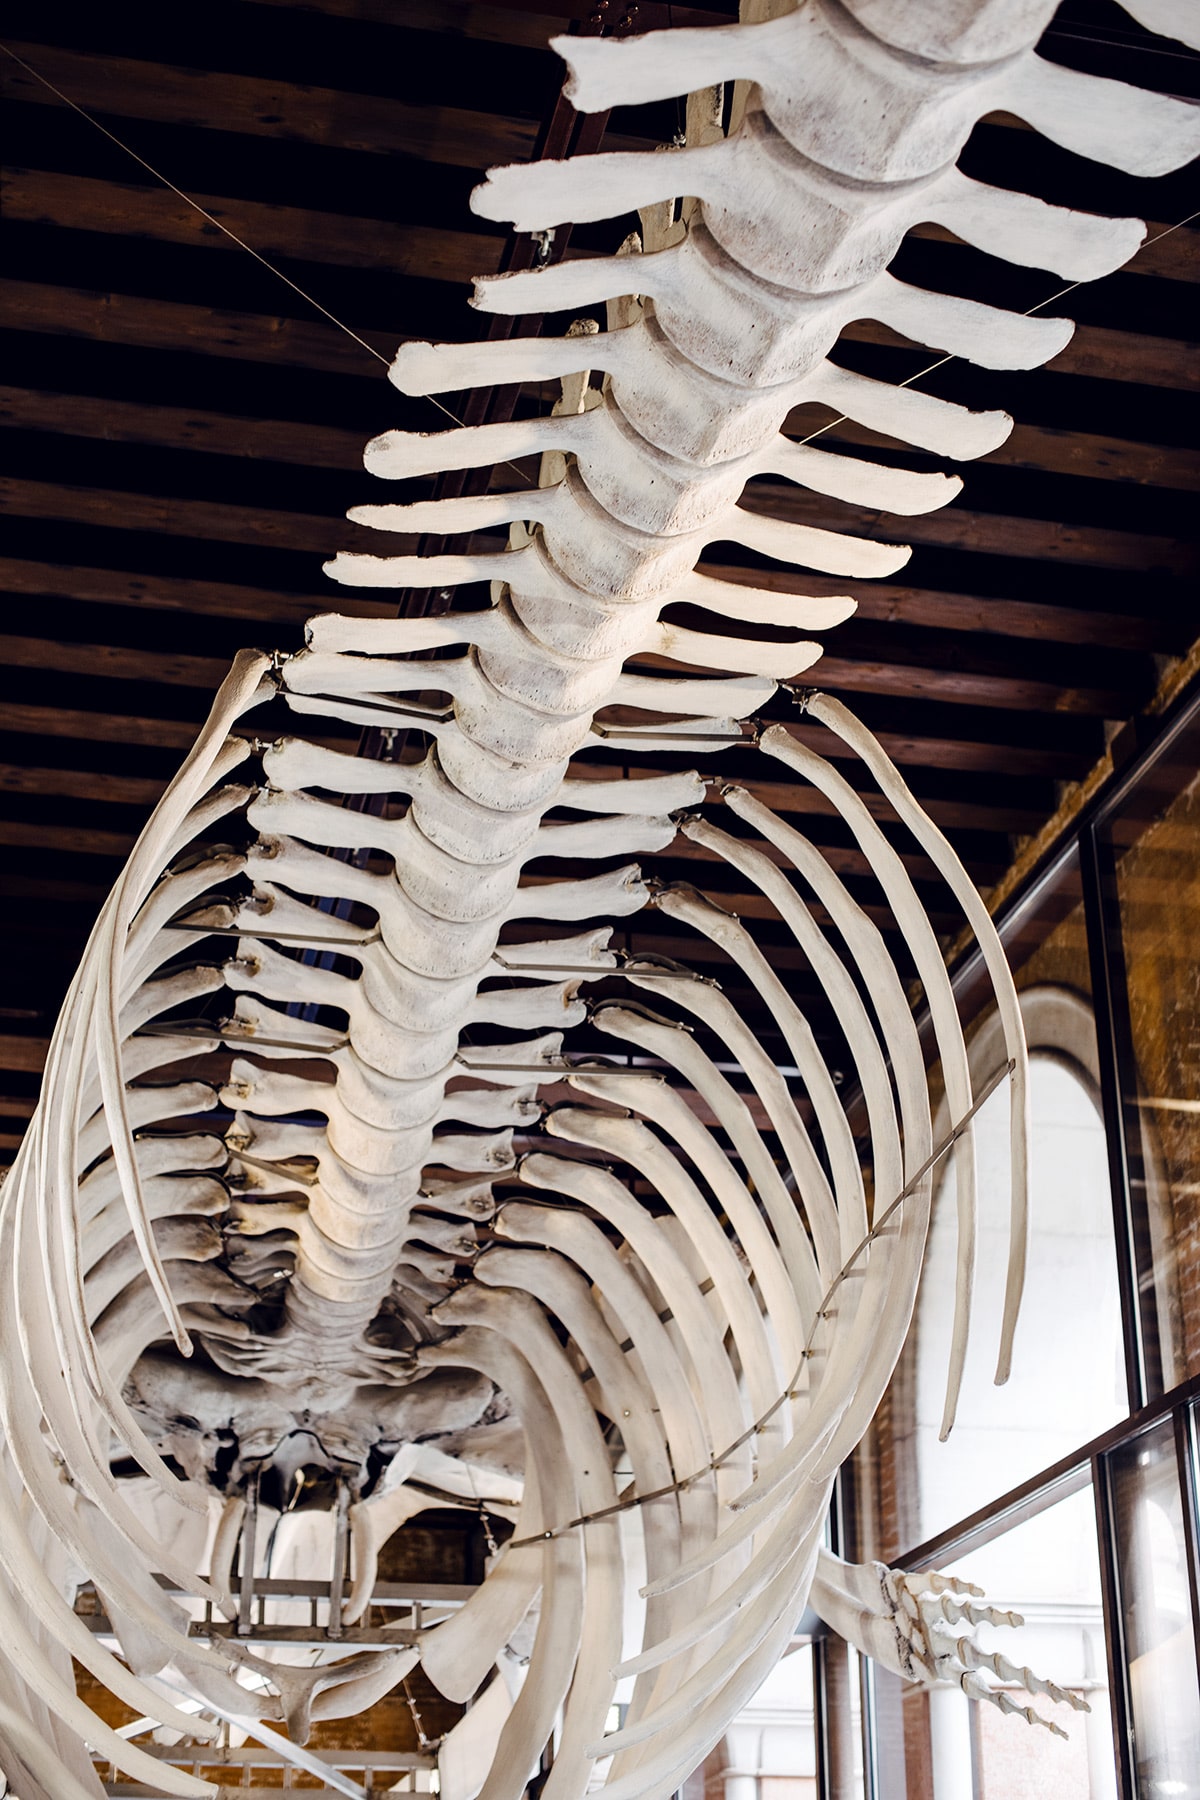 Squelette de baleine exposé au musée d'histoire naturelle de Venise